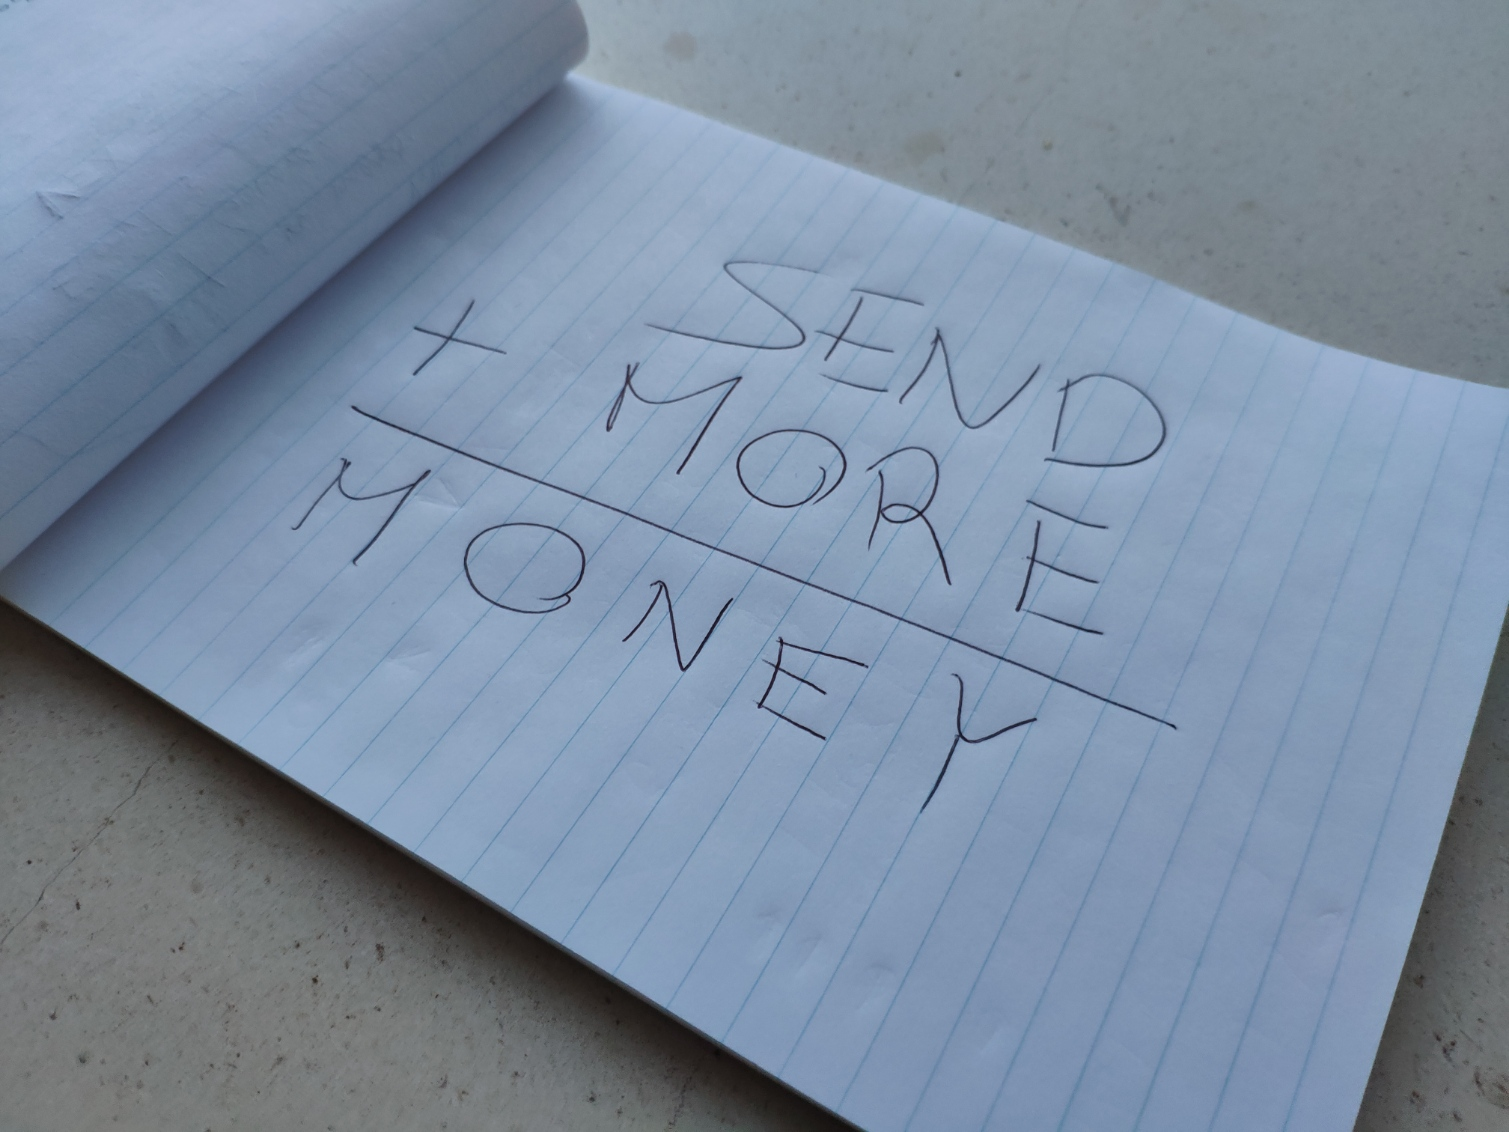 Um pedaço de papel onde se vê a soma "SEND + MORE = MONEY".